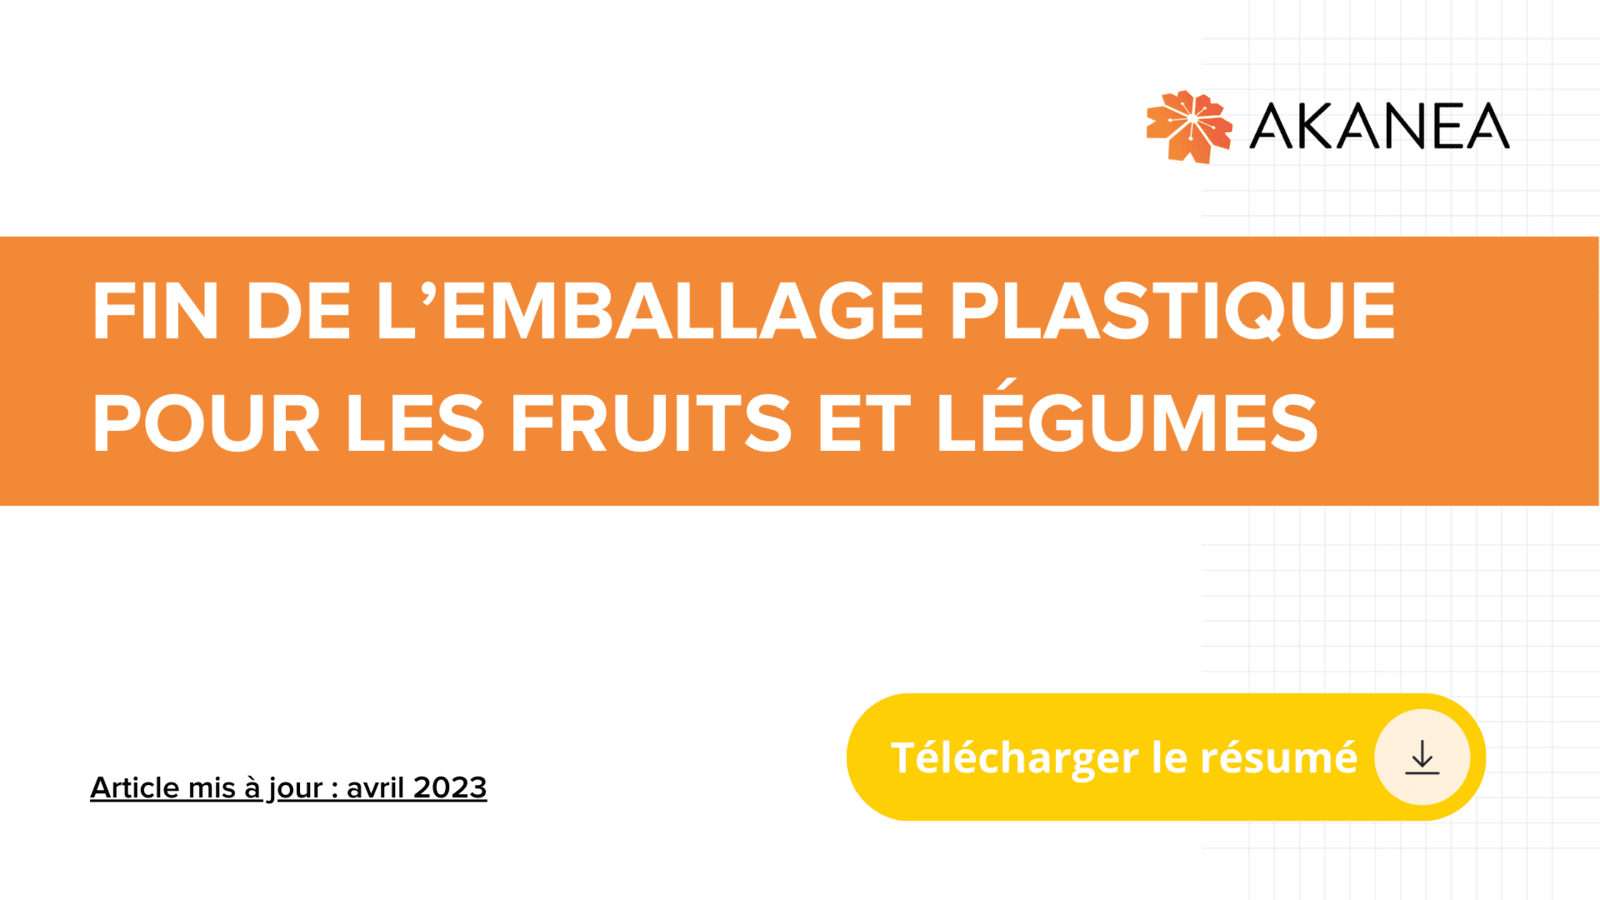 Téléchargez le résumé de l'article AKANEA sur la règlementation des emballages plastiques pour les fruits et légumes.